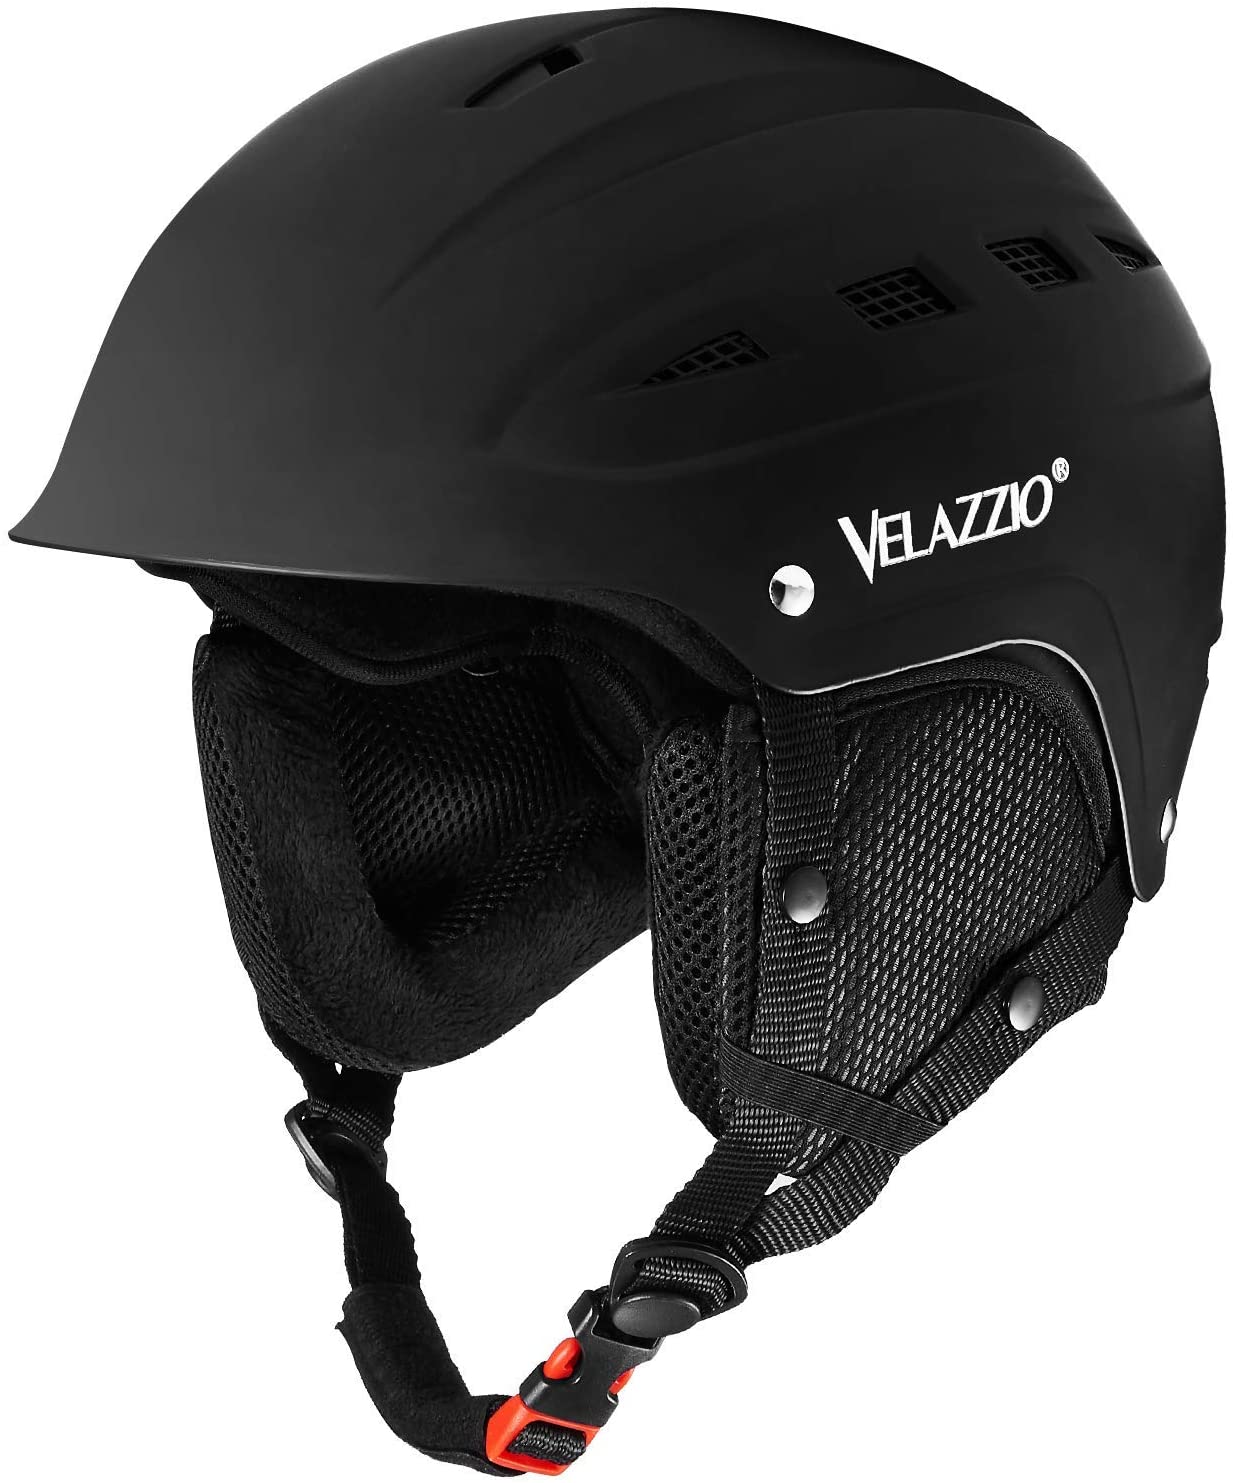 VELAZZIO Adjustable Venting Adult Ski Helmet